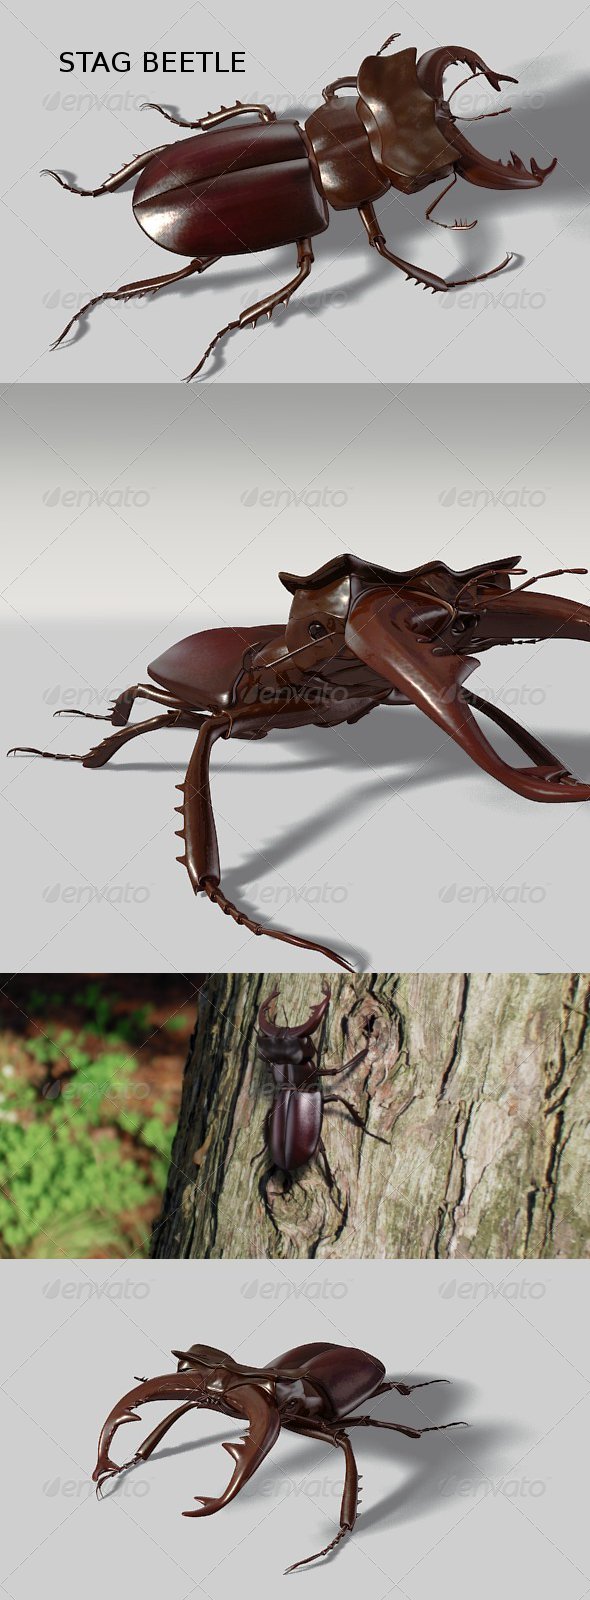 Stag beetle - 3Docean 136665